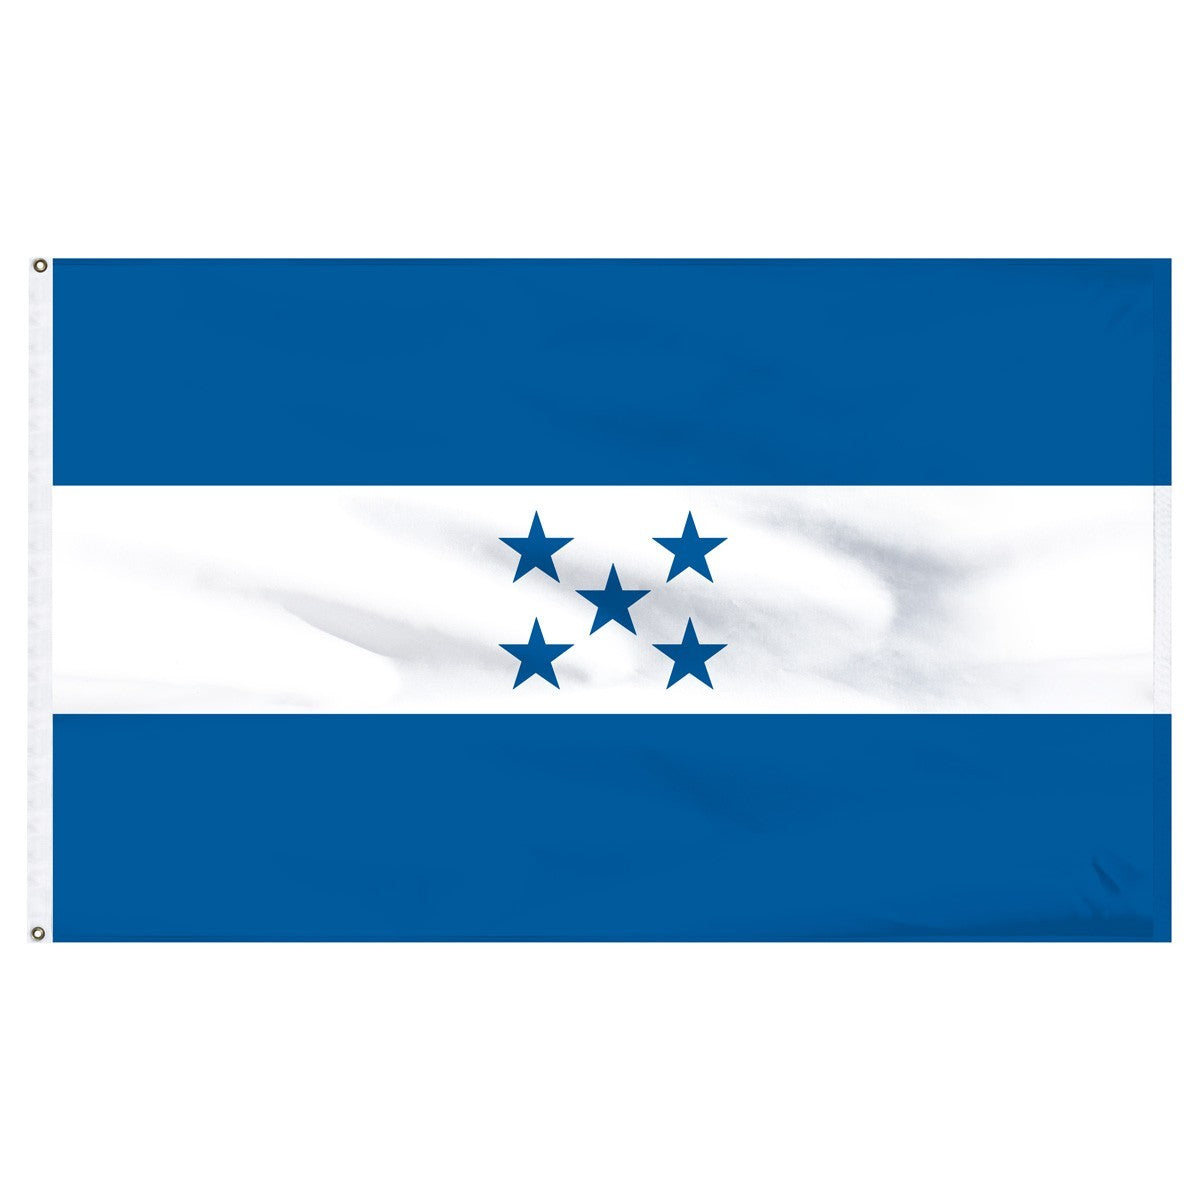 Honduras nylon flags for sale 2X3ft